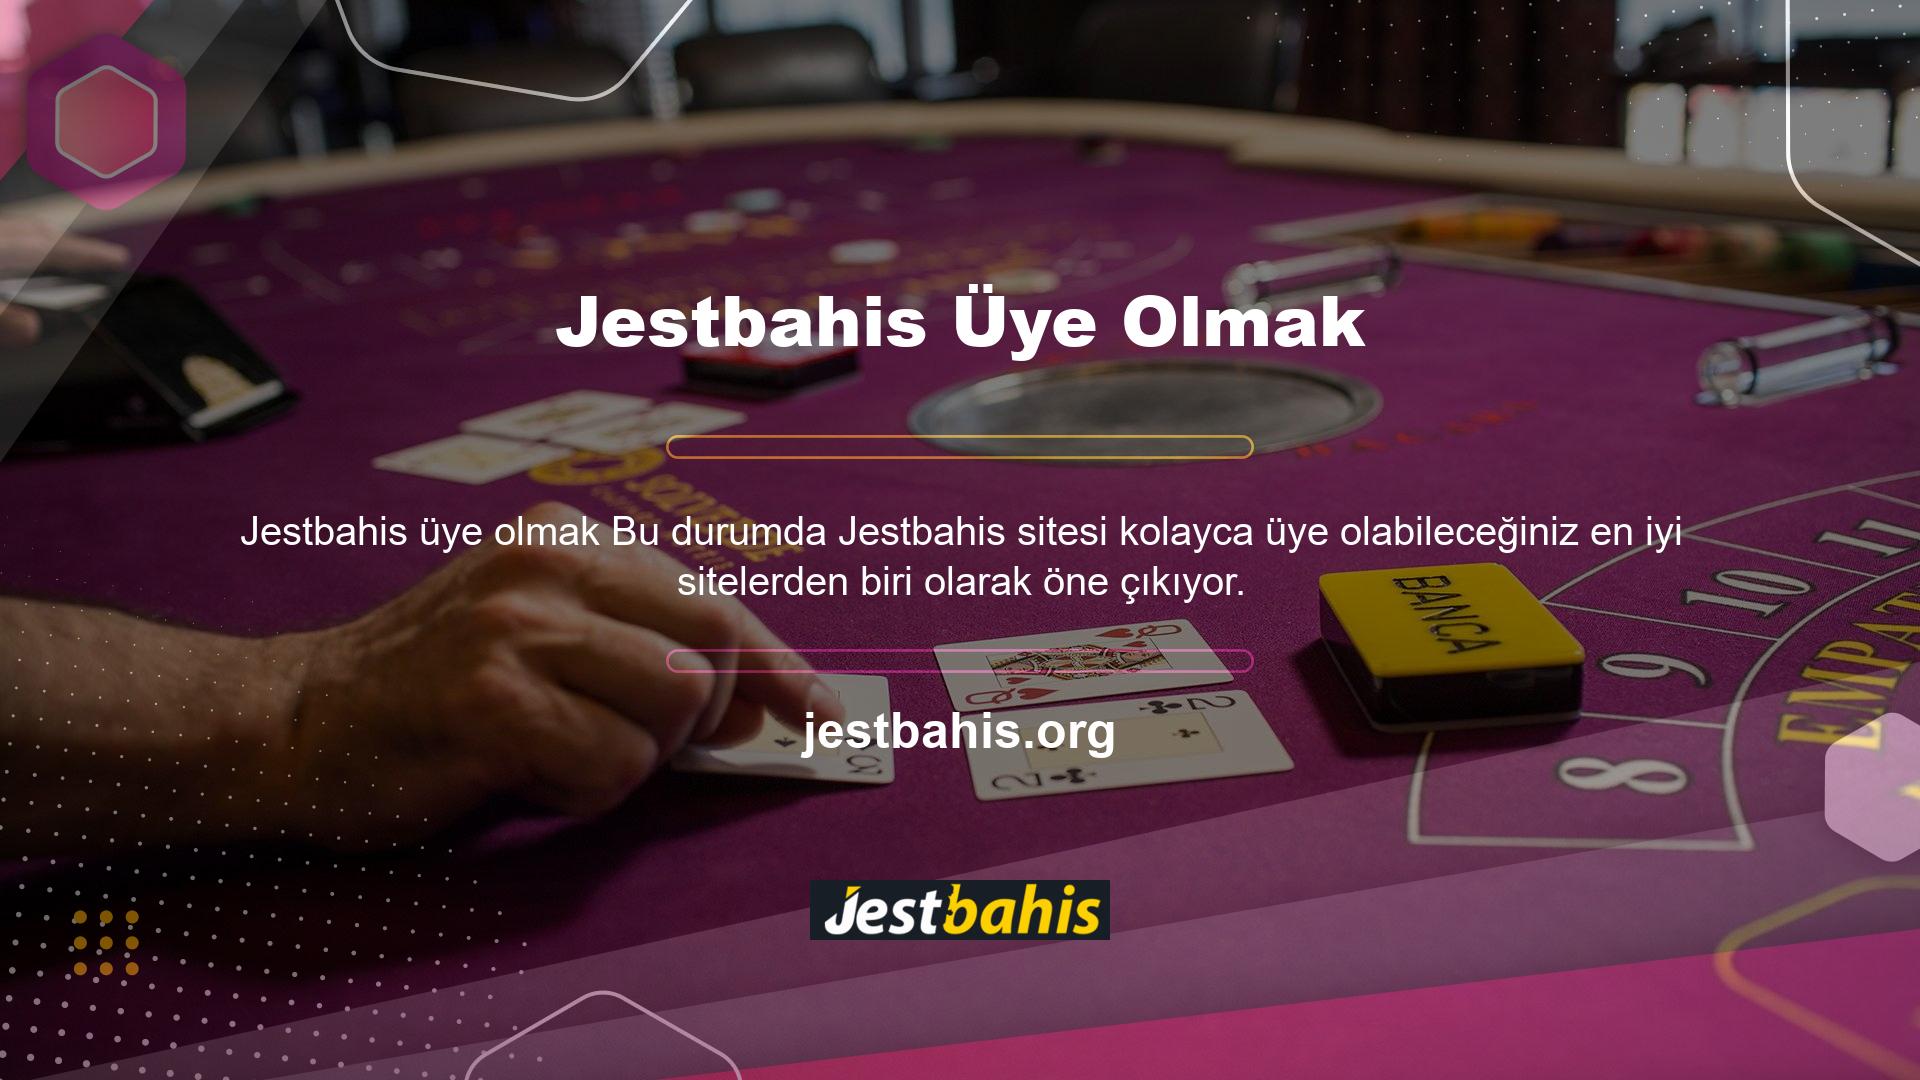 Oyuncular, bu web sitesindeki Jestbahis kayıt işlemi aracılığıyla kendileri kolayca bir hesap açabilirler